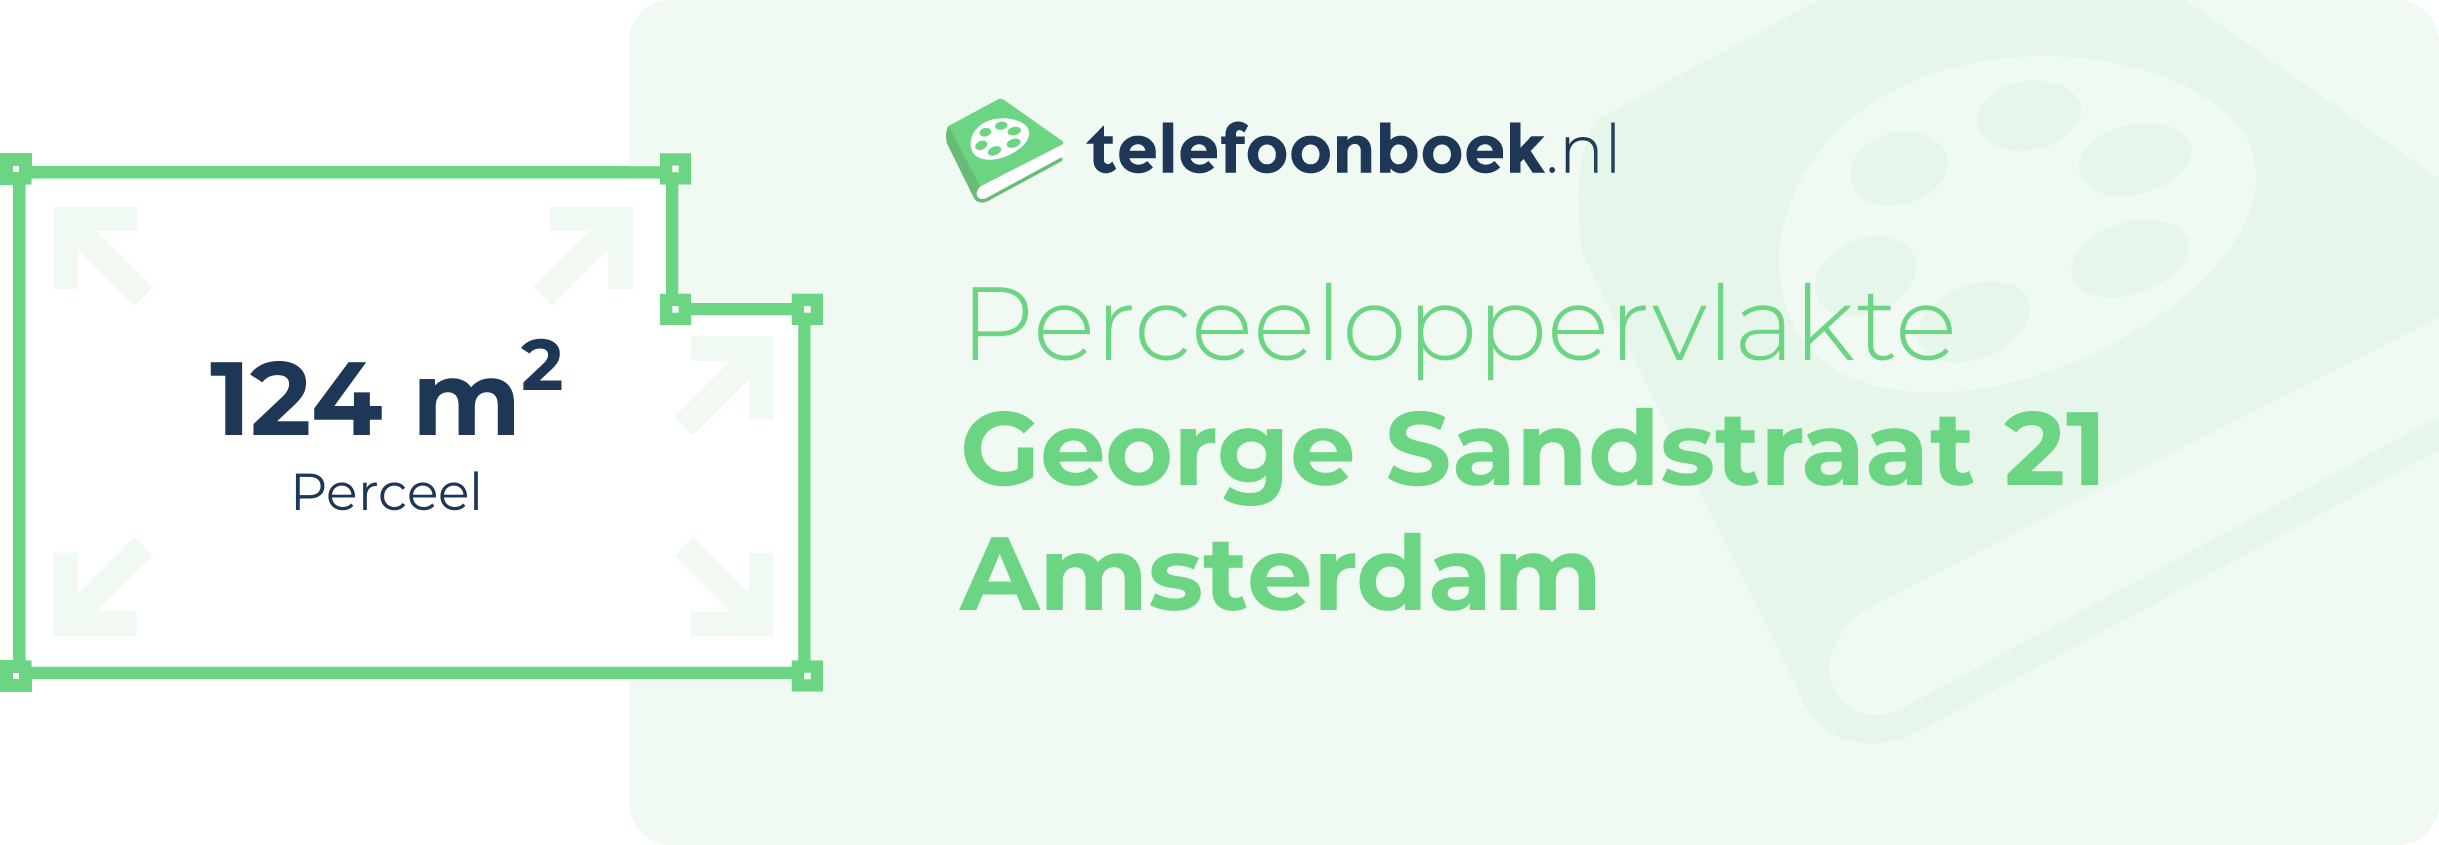 Perceeloppervlakte George Sandstraat 21 Amsterdam